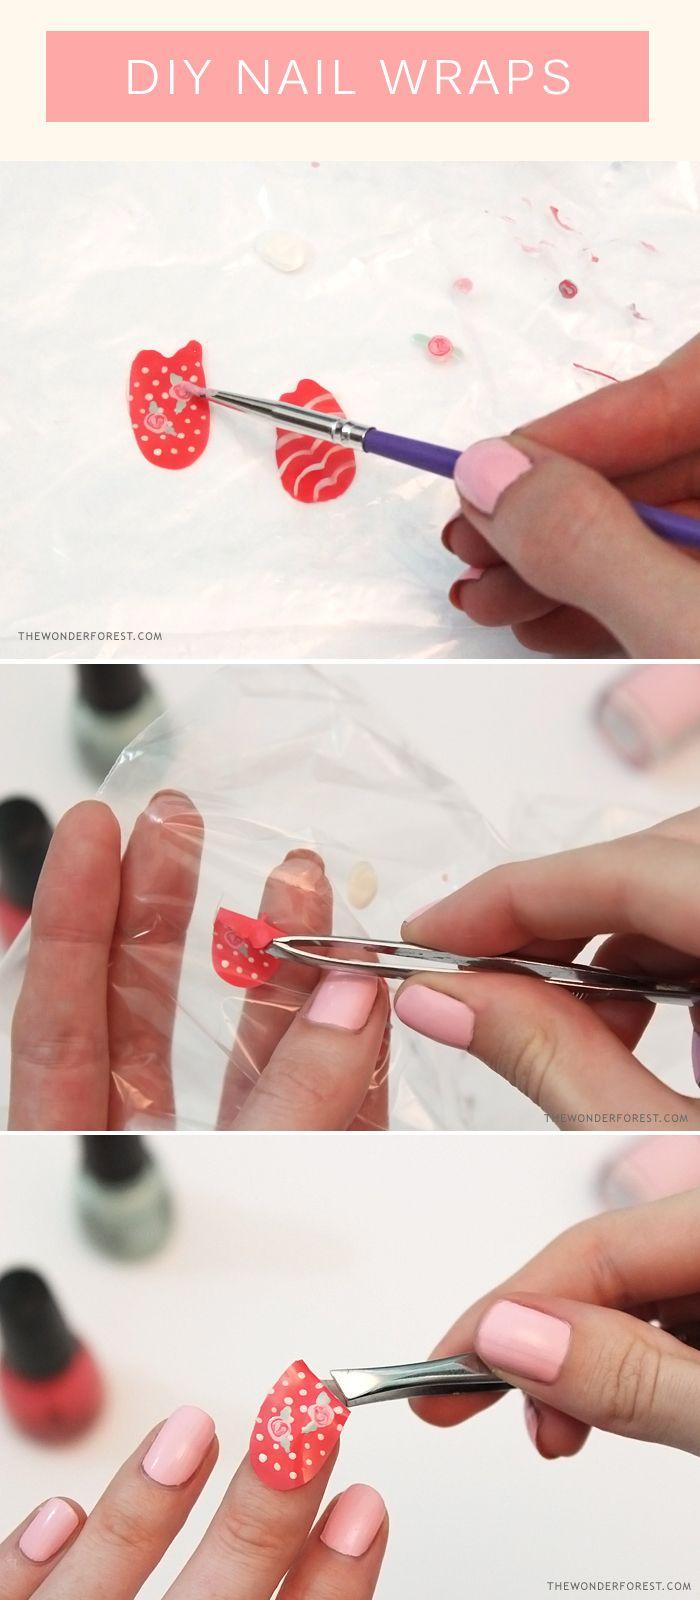 Wedding - Make Your Own Nail Wraps!